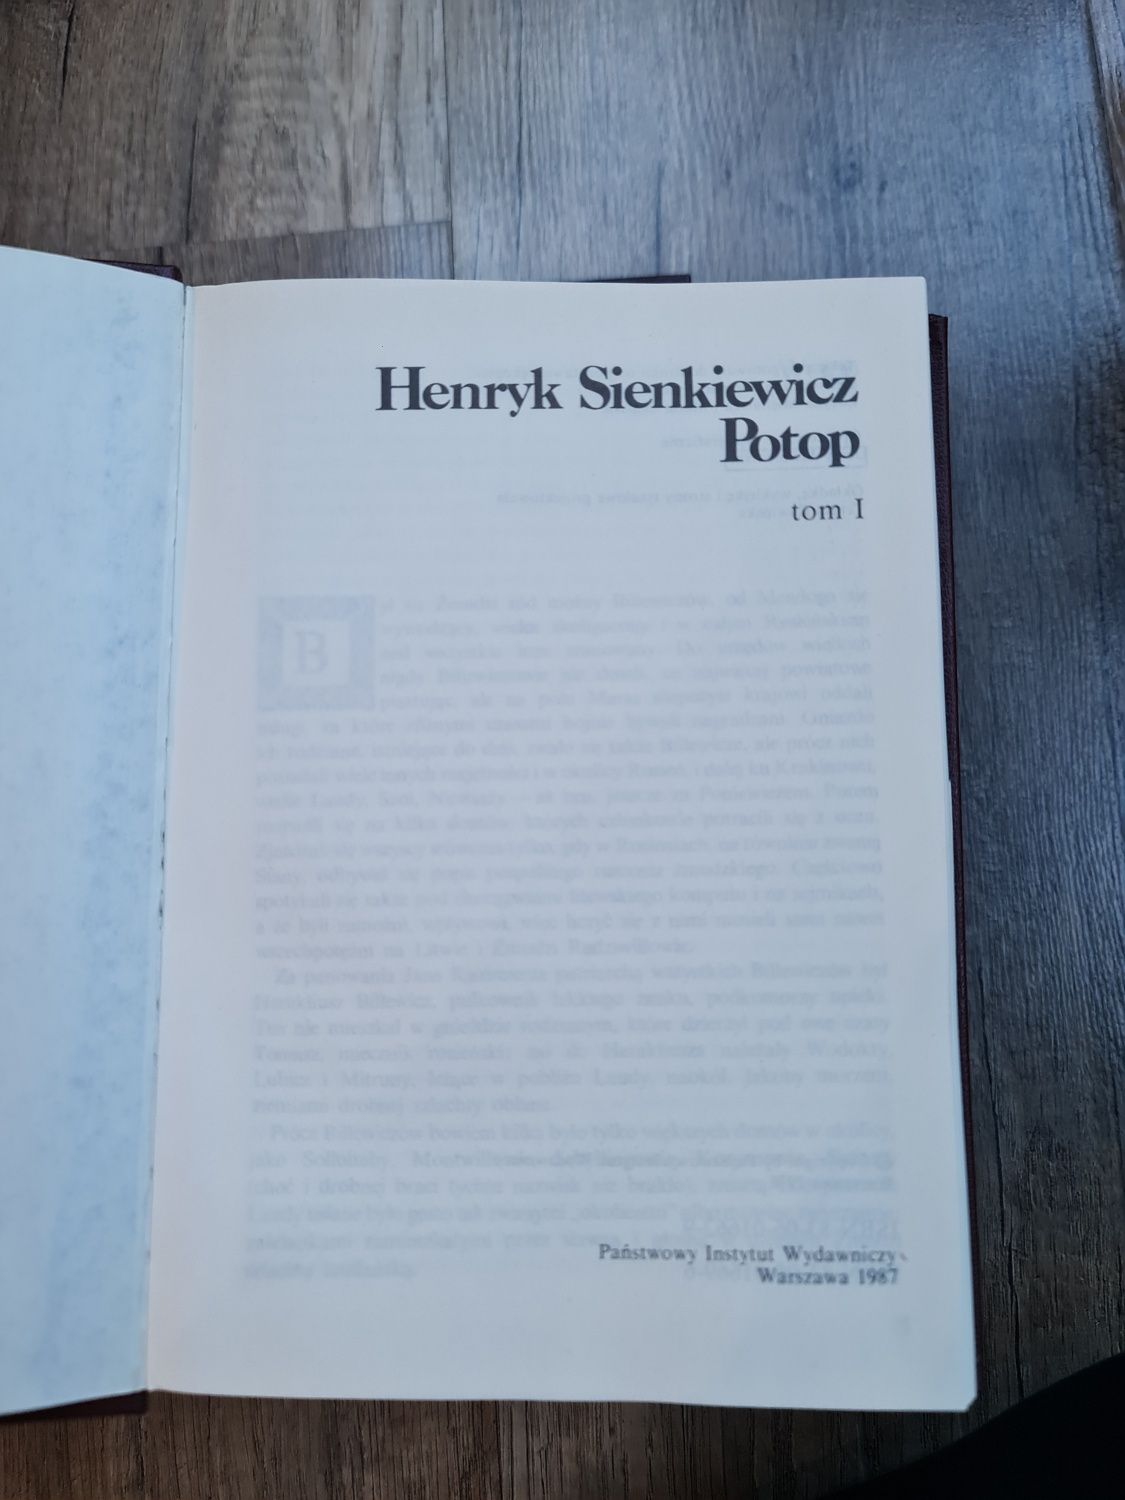 Henryk Sienkiewicz pisma wybrane m.in. Krzyżacy, Potop, Quo Vadis,